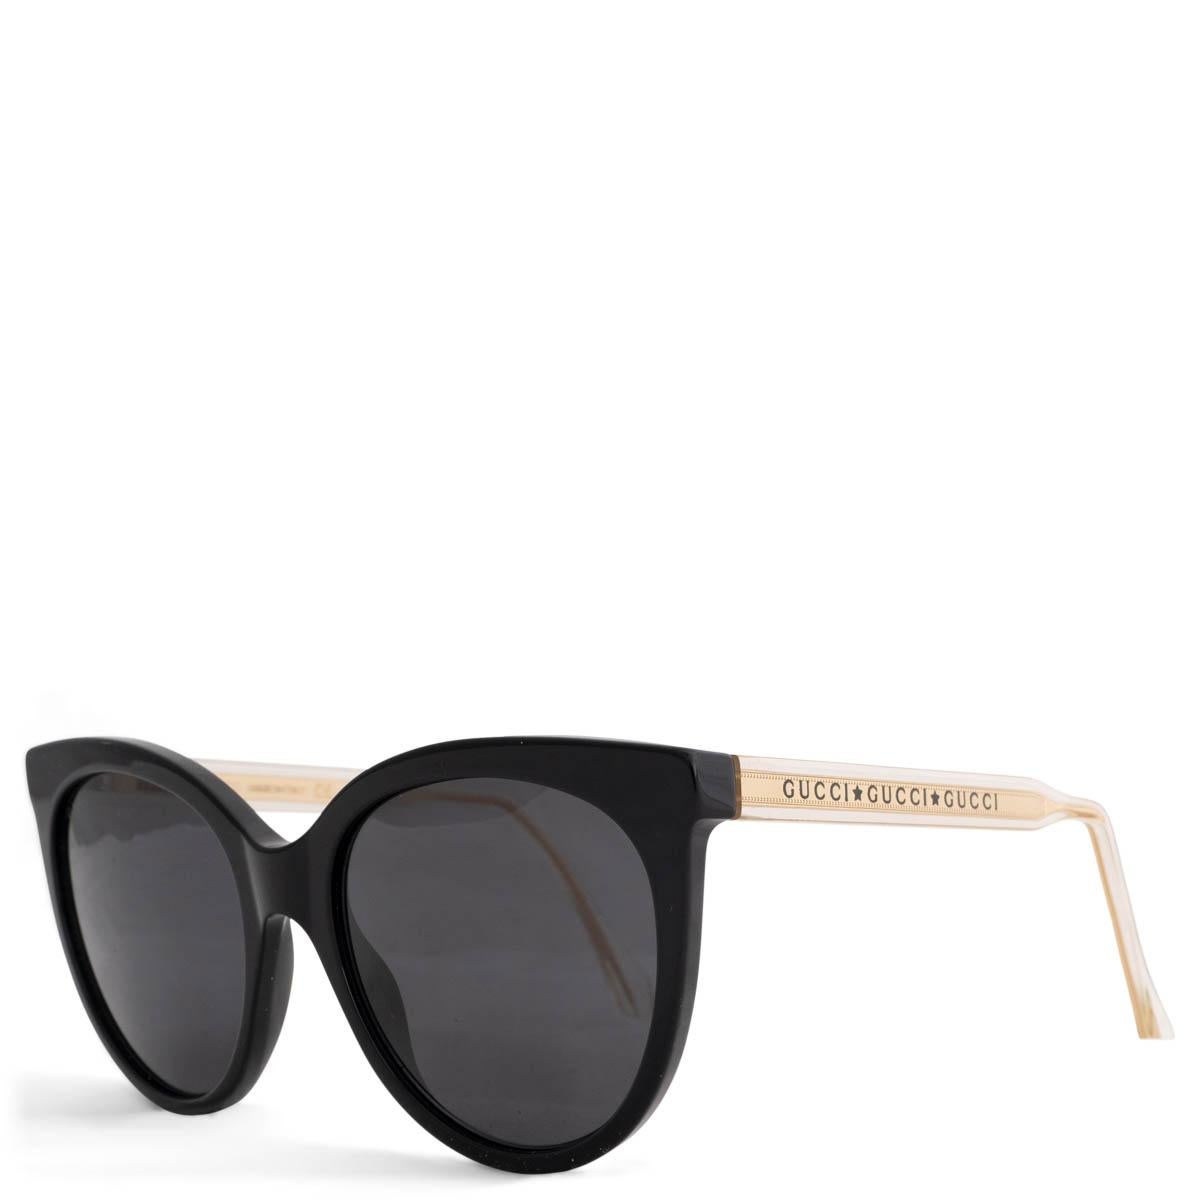 100% authentische Gucci Sonnenbrille mit Katzenaugen aus schwarzem Acetat. Mit goldfarbenen Bügeln mit Logo und grauen Gläsern. Sie wurden getragen und sind in ausgezeichnetem Zustand. Kommt mit Etui.

Messungen
Modell	GG0565S 001
Breite	14cm